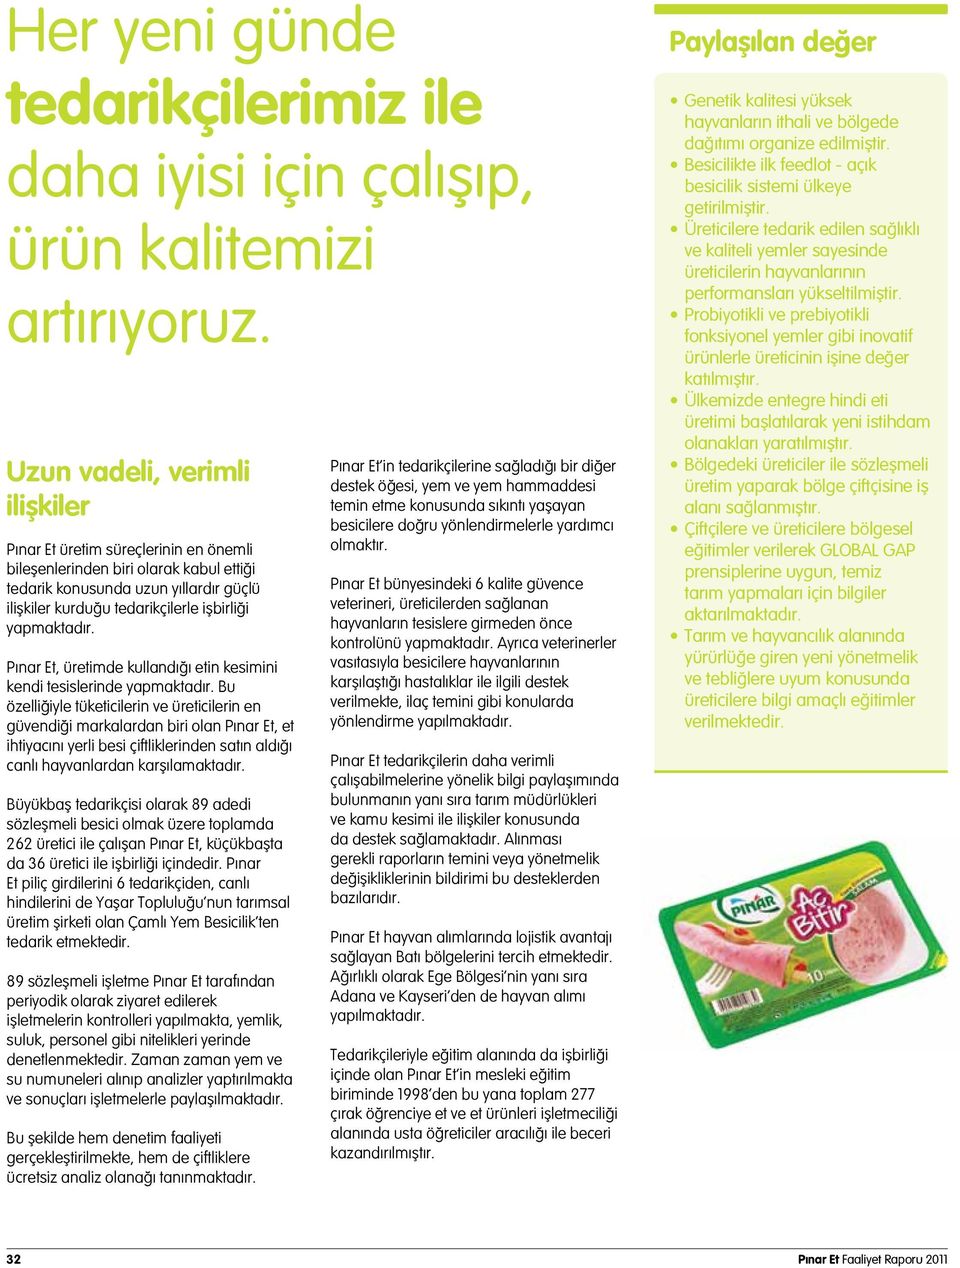 yapmaktadır. Pınar Et, üretimde kullandığı etin kesimini kendi tesislerinde yapmaktadır.